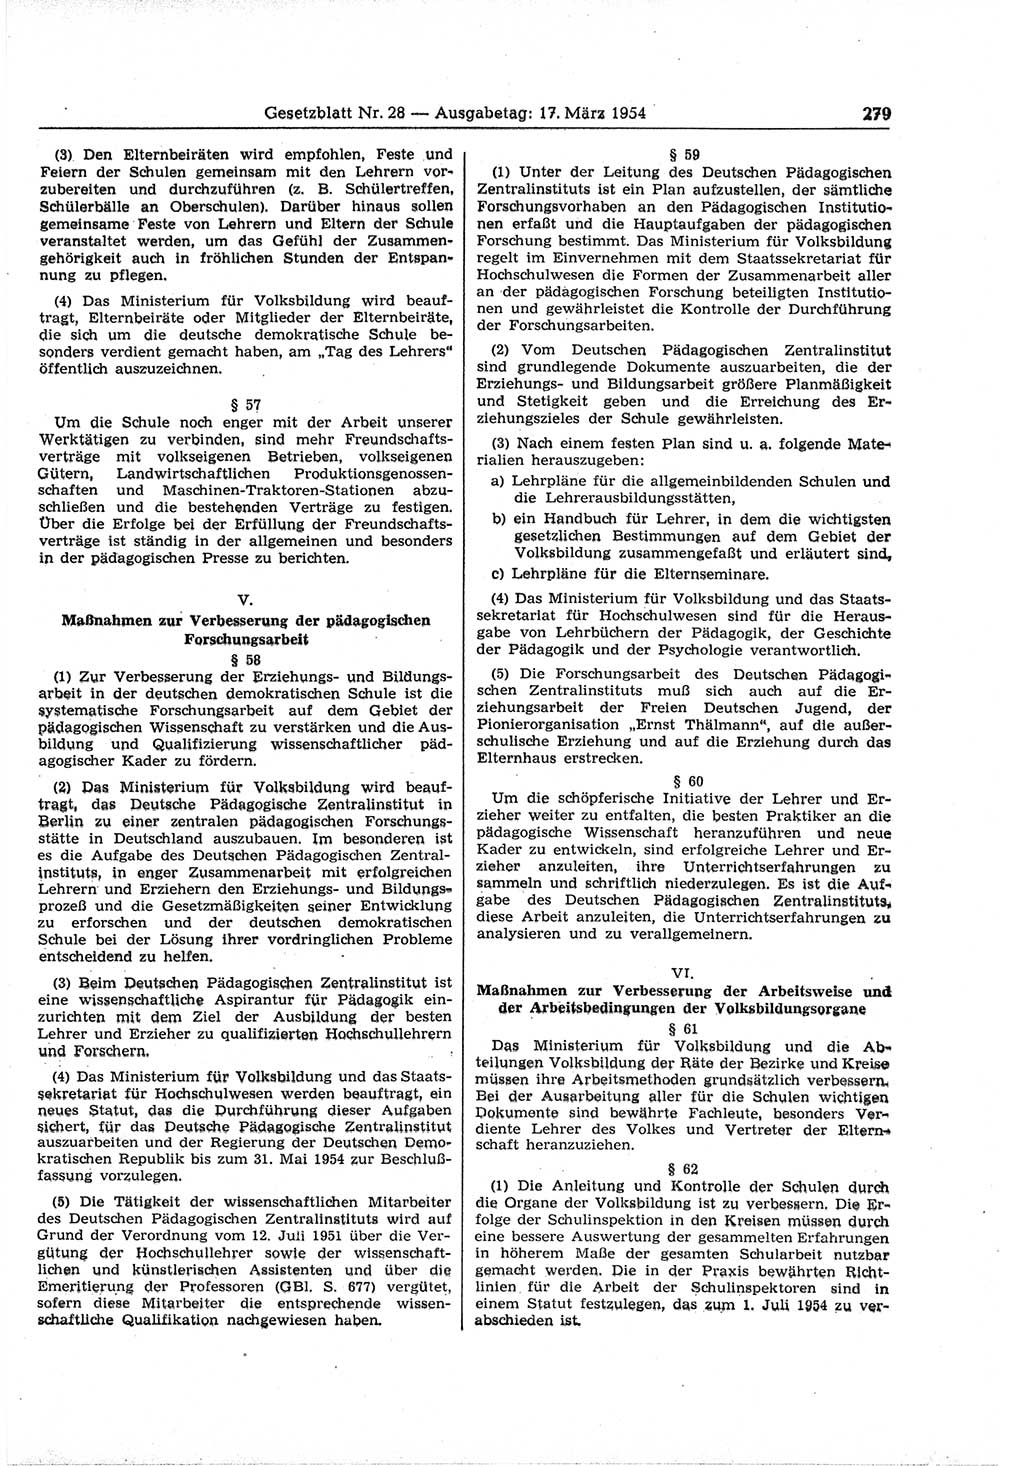 Gesetzblatt (GBl.) der Deutschen Demokratischen Republik (DDR) 1954, Seite 279 (GBl. DDR 1954, S. 279)